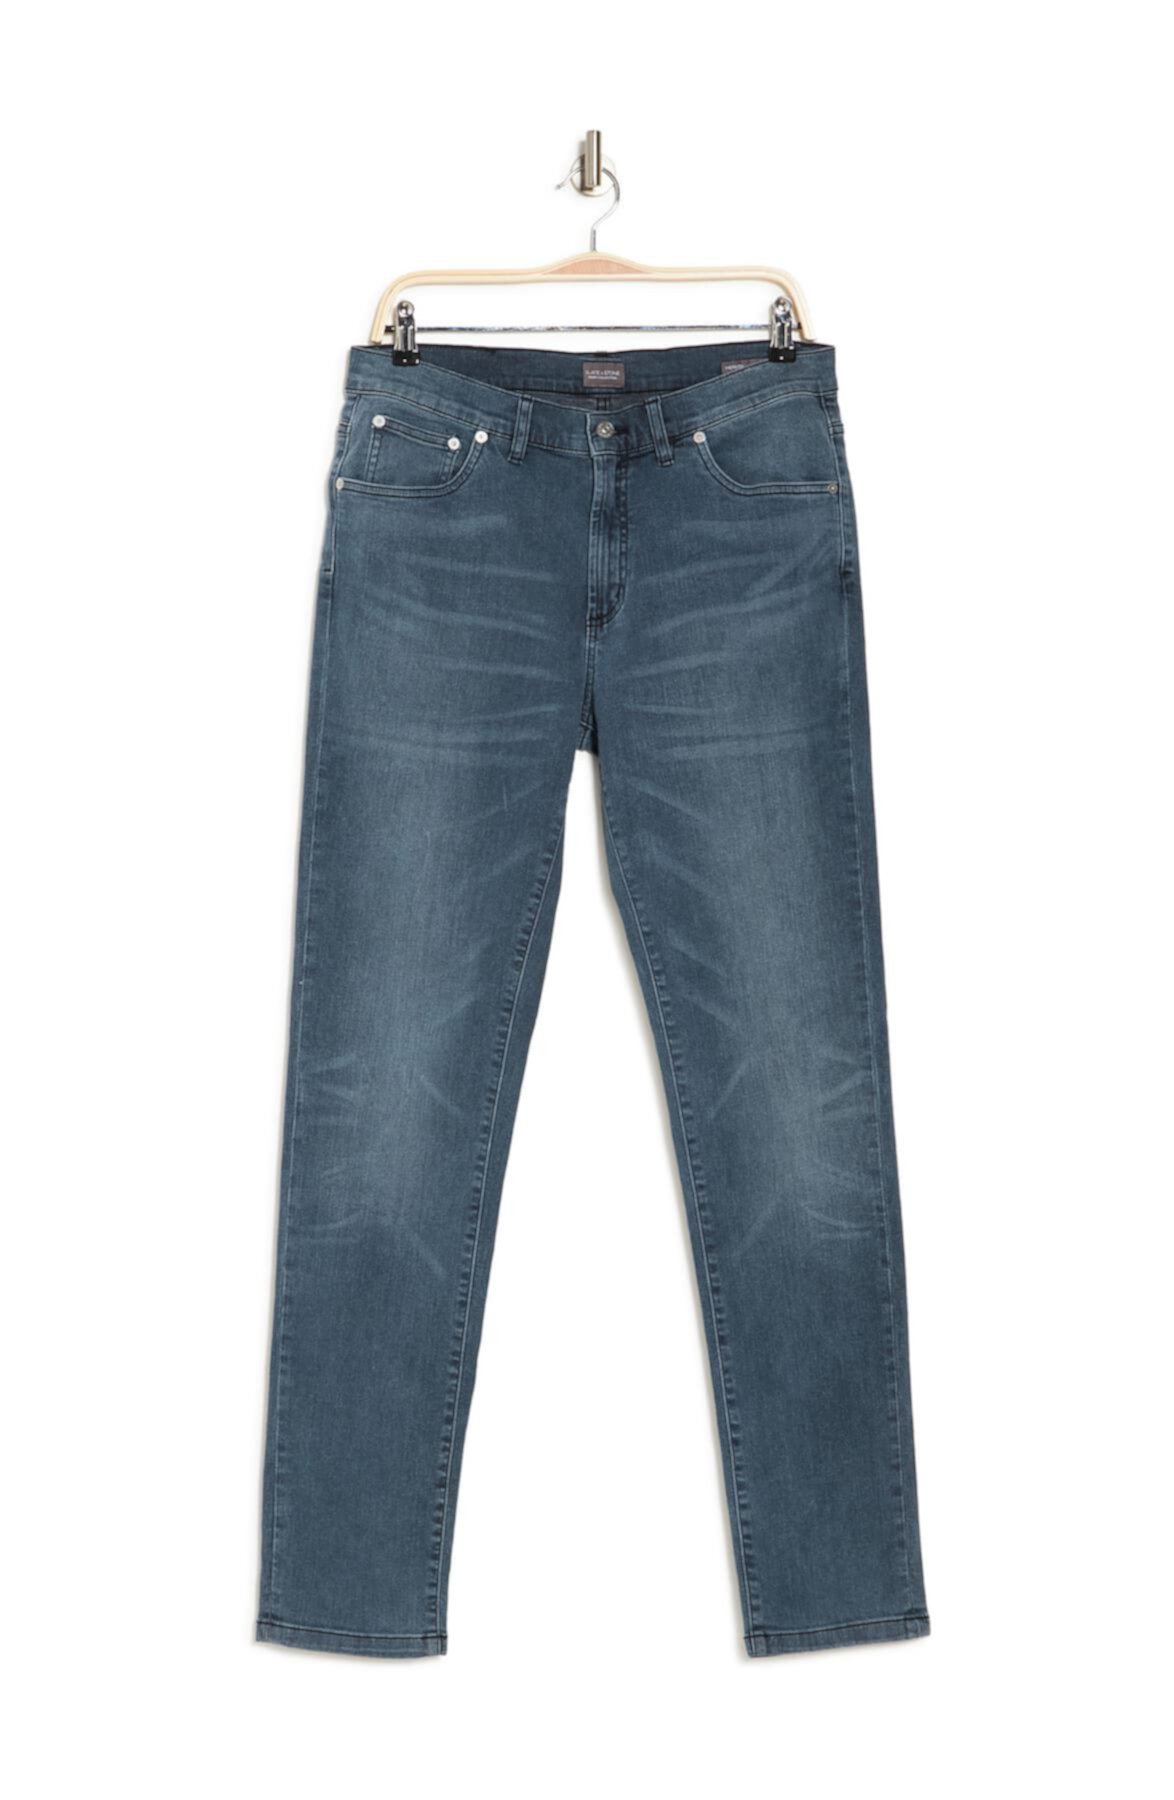 Джинсовые джинсы скинни Mercer Slate & Stone